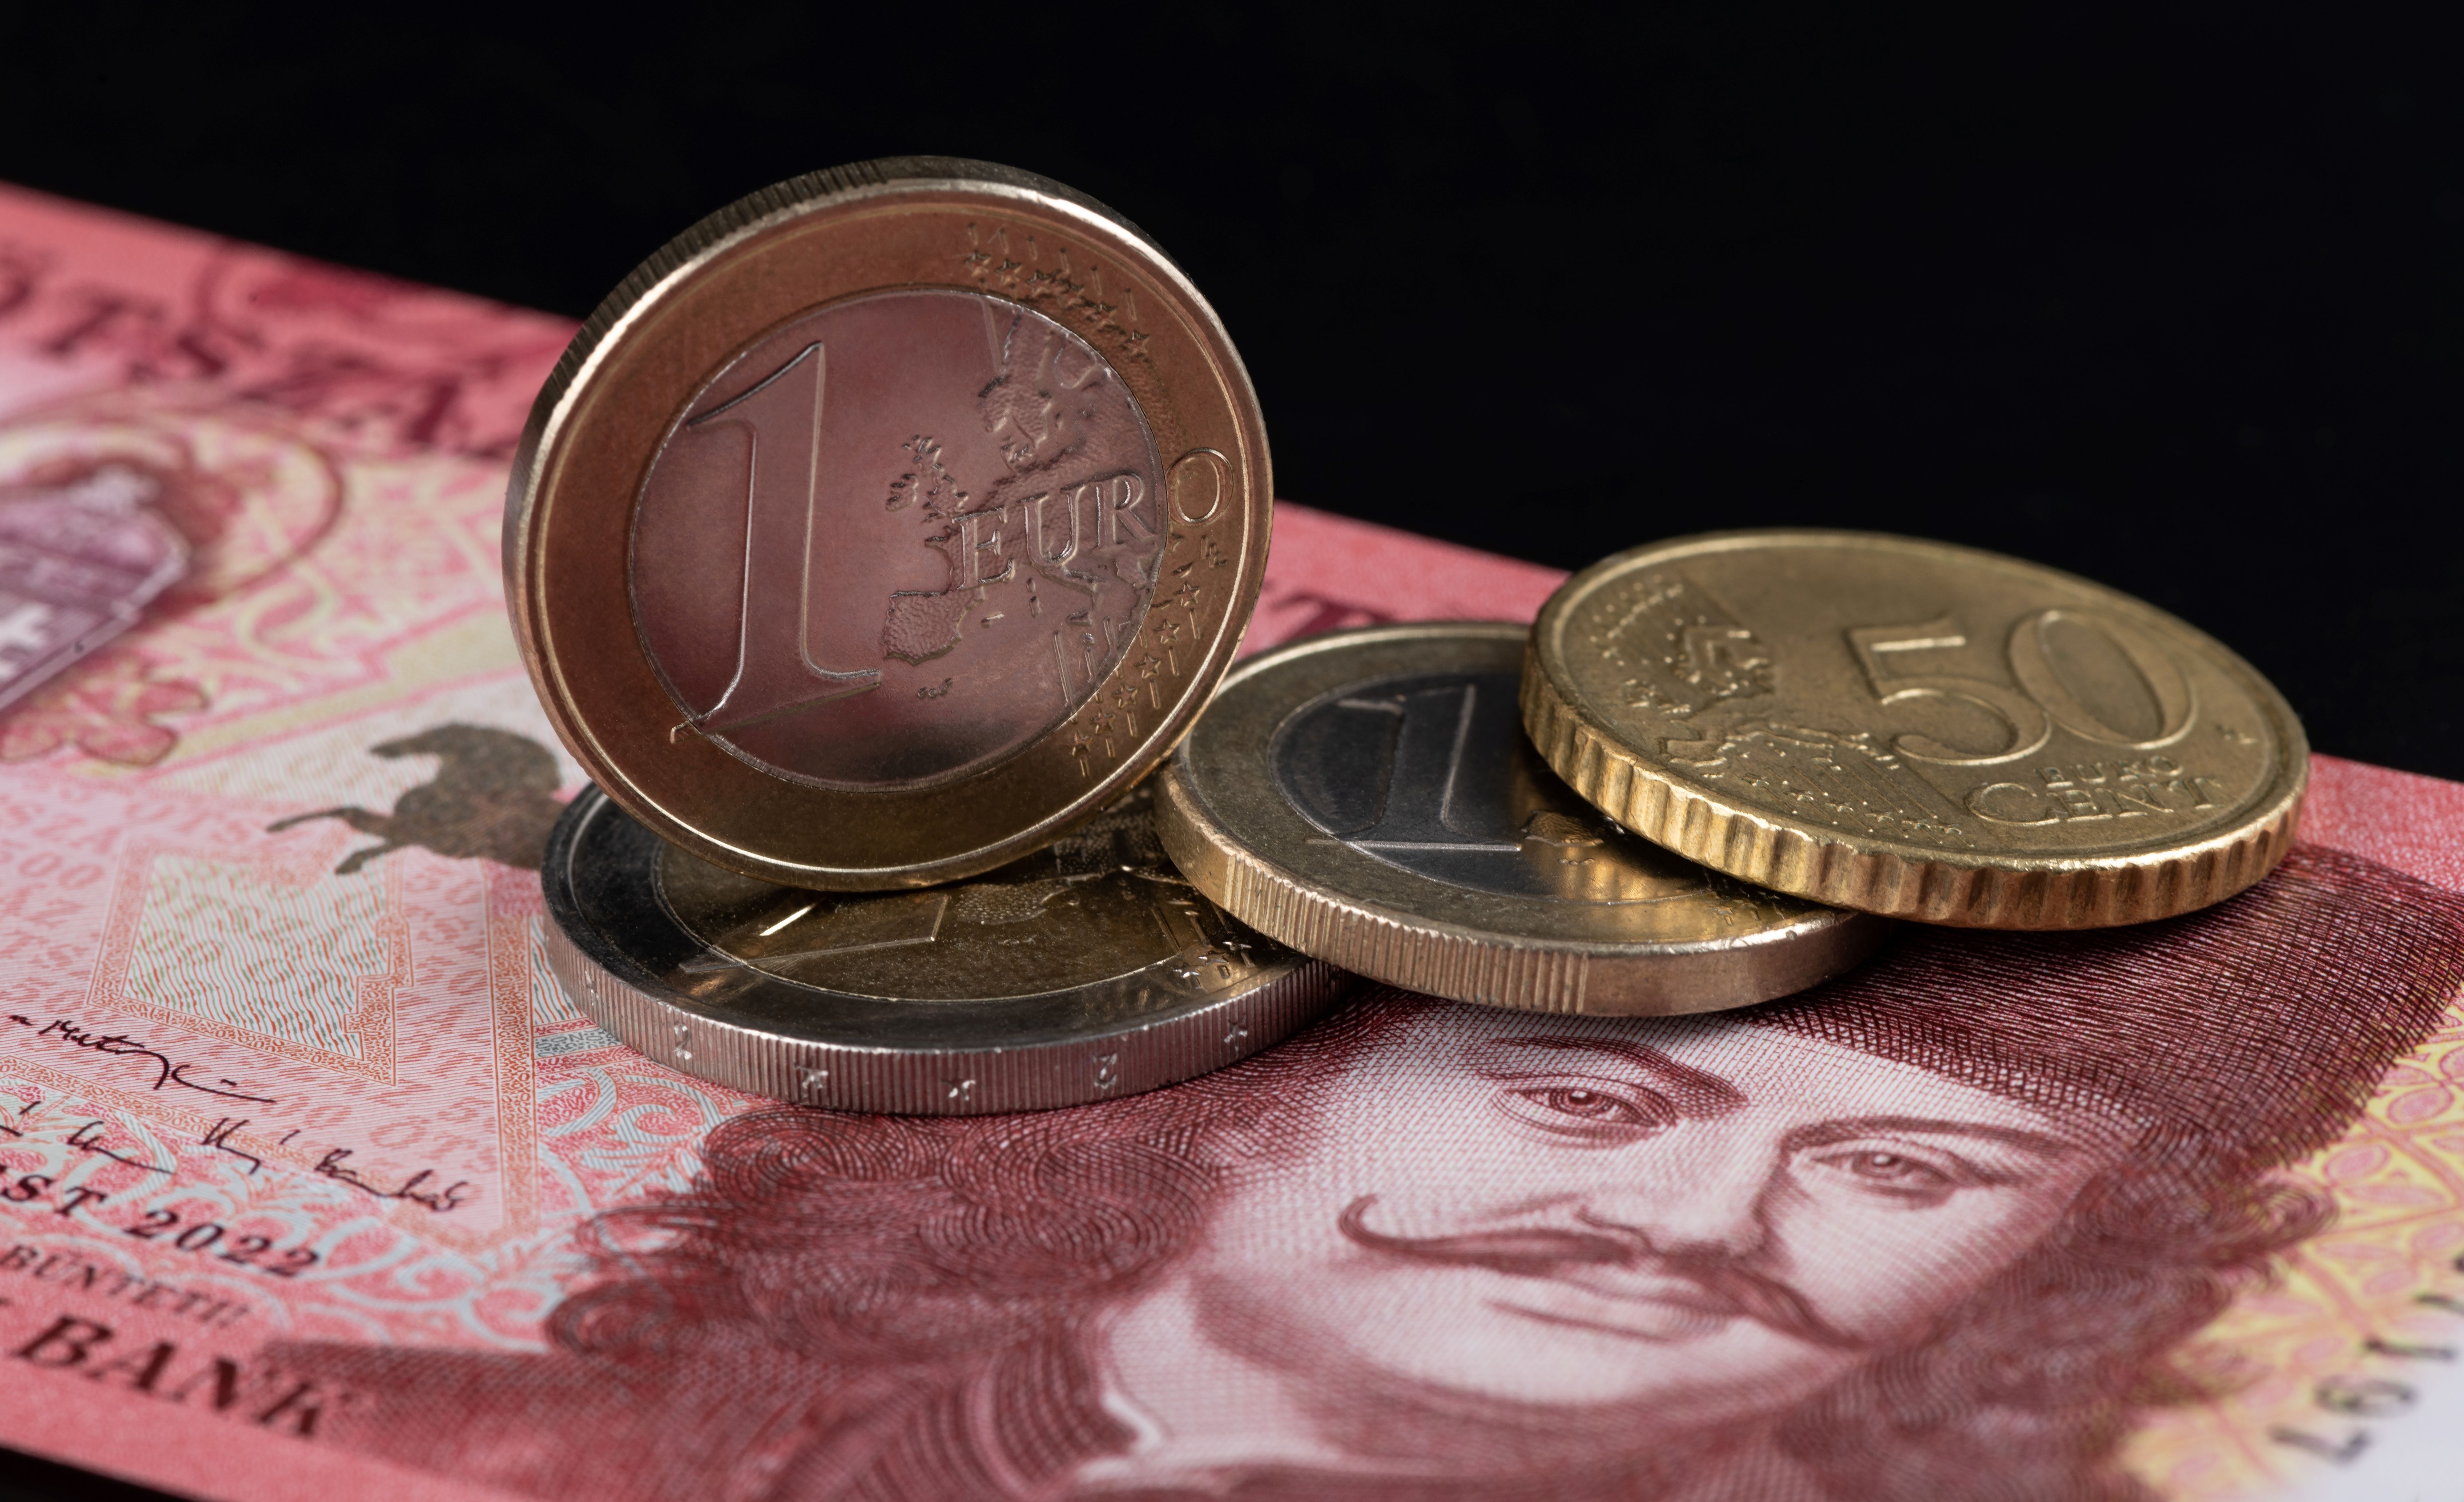 Leáldozott a bankjegyeknek és az érméknek Európában?